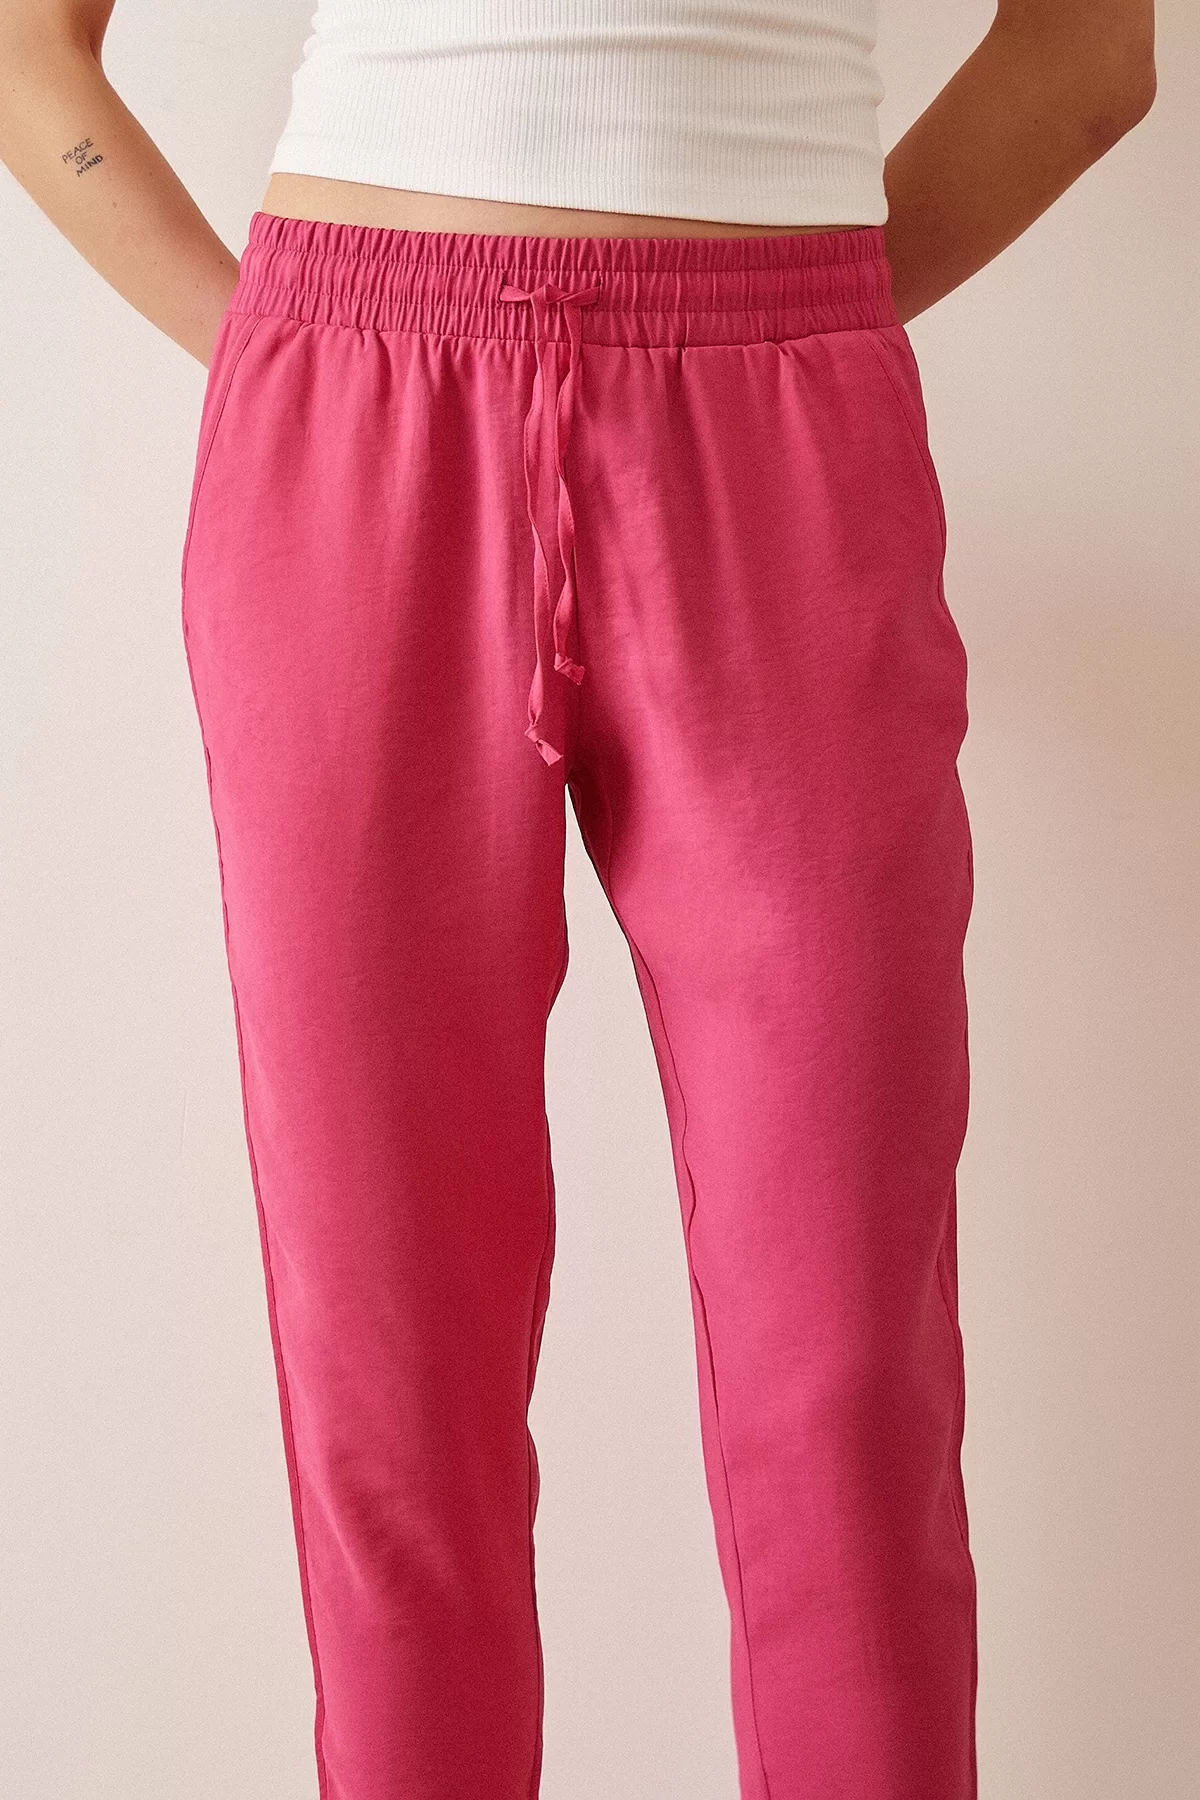 Yanı Biyeli Bağcıklı Pijama Pantolon - Fuşya